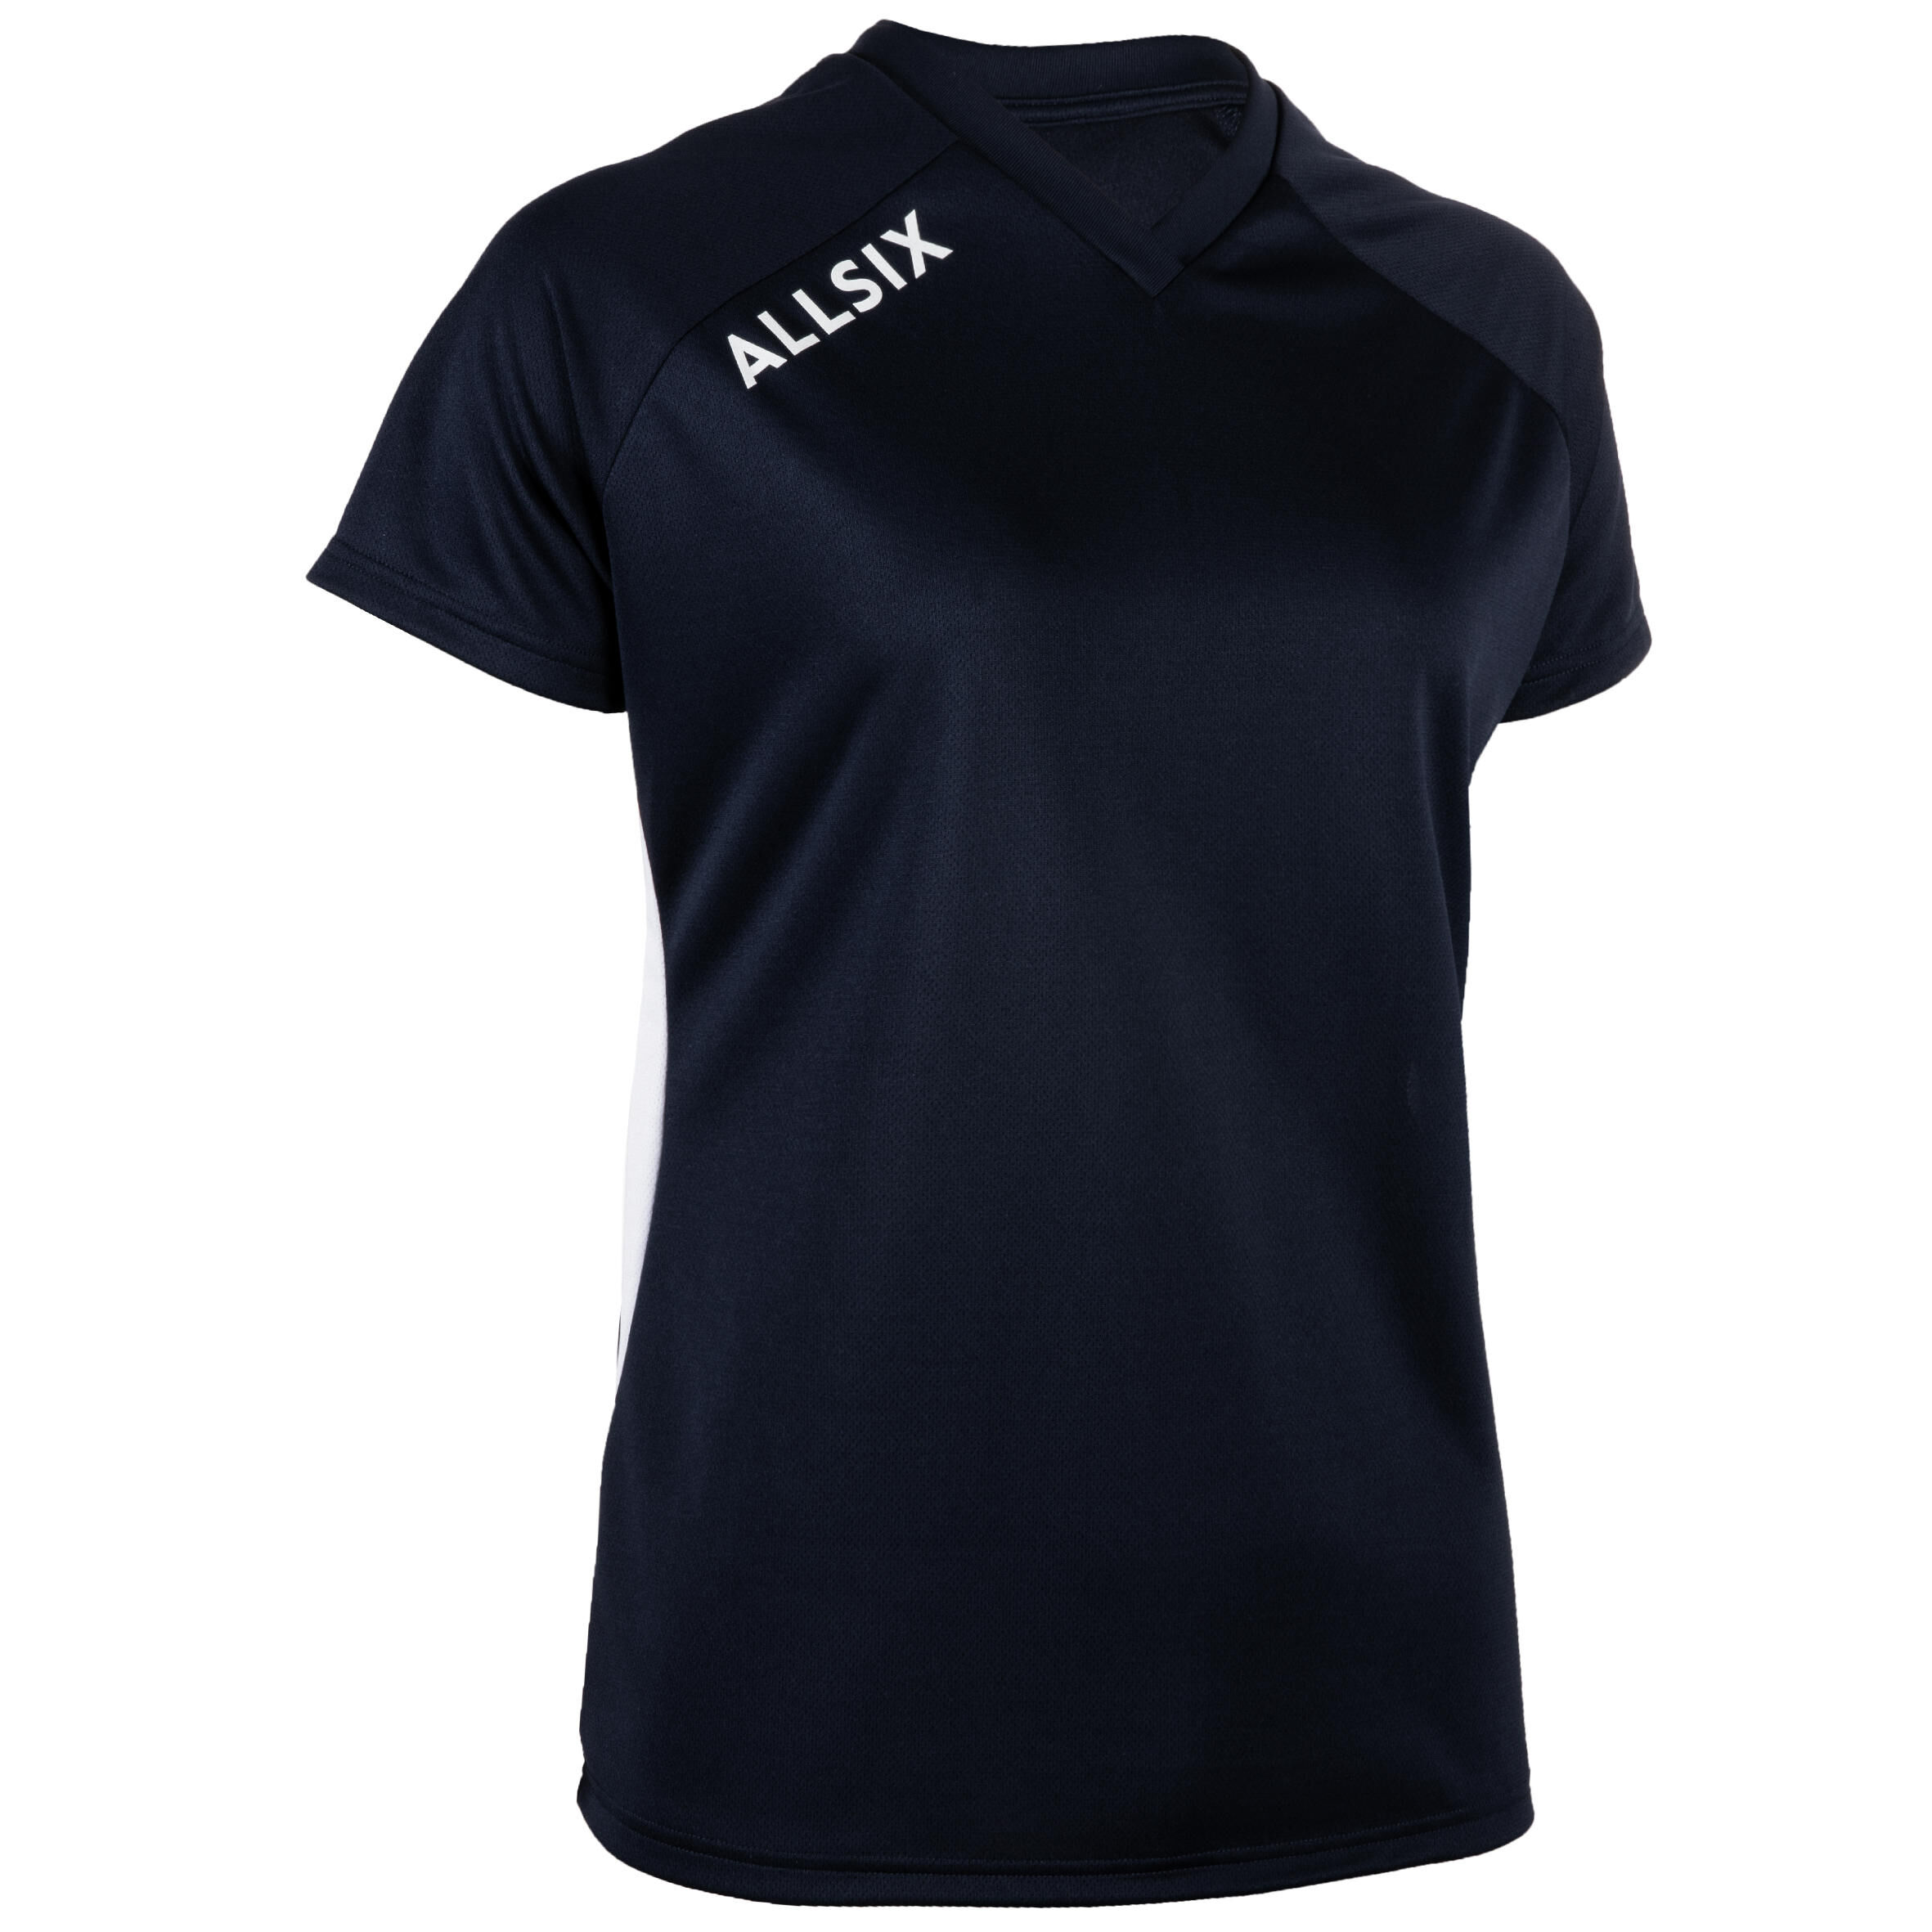 ALLSIX V100 Women's Volleyball Jersey - Navy Blue